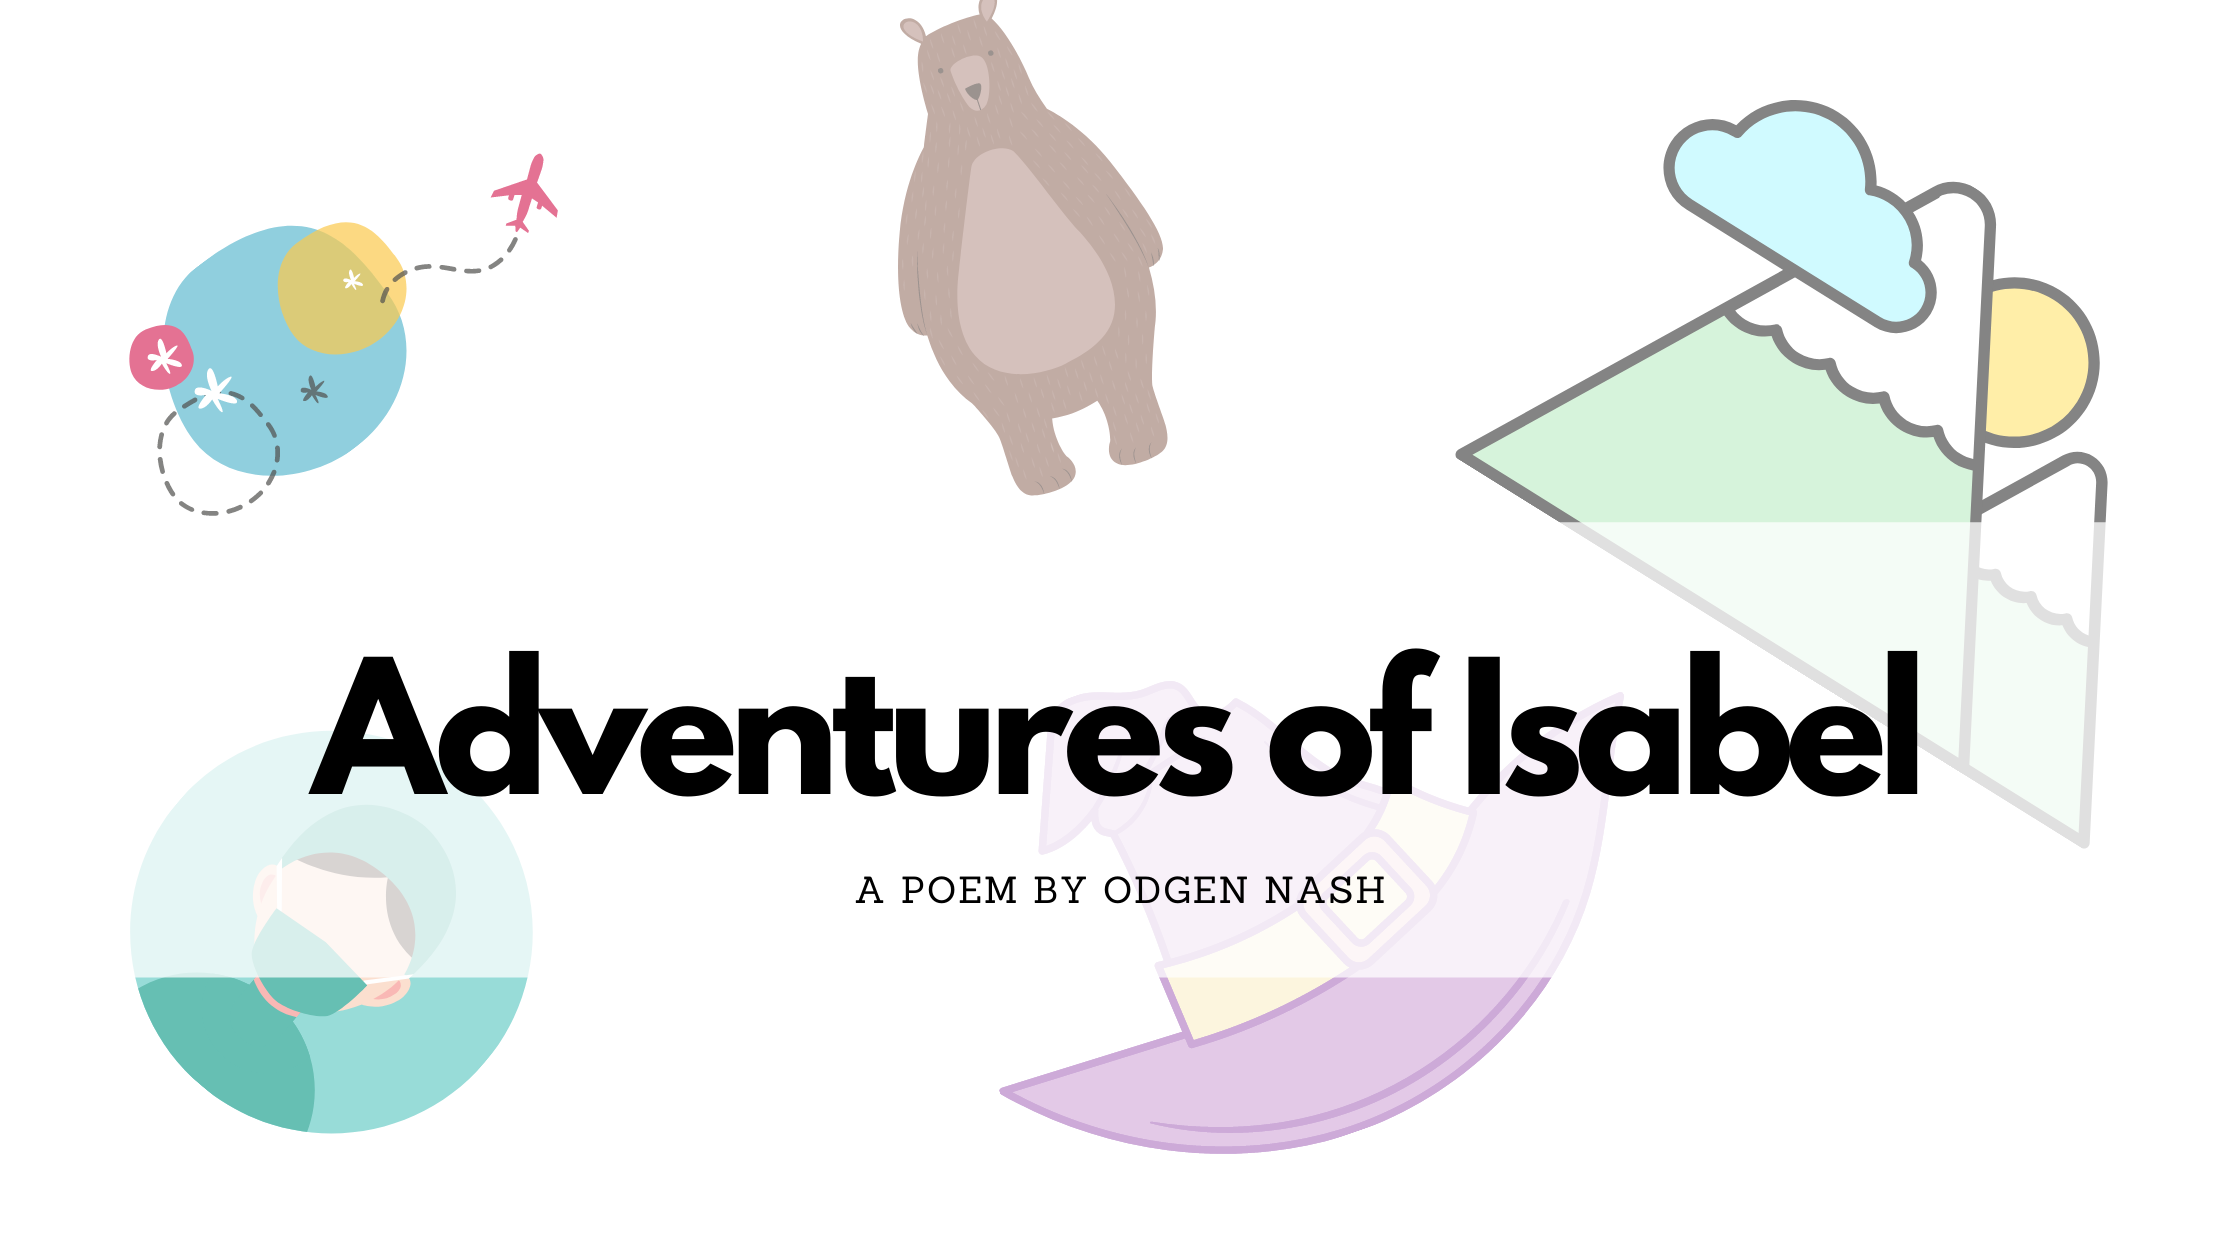 Adventures of Isabel by Ogden Nash